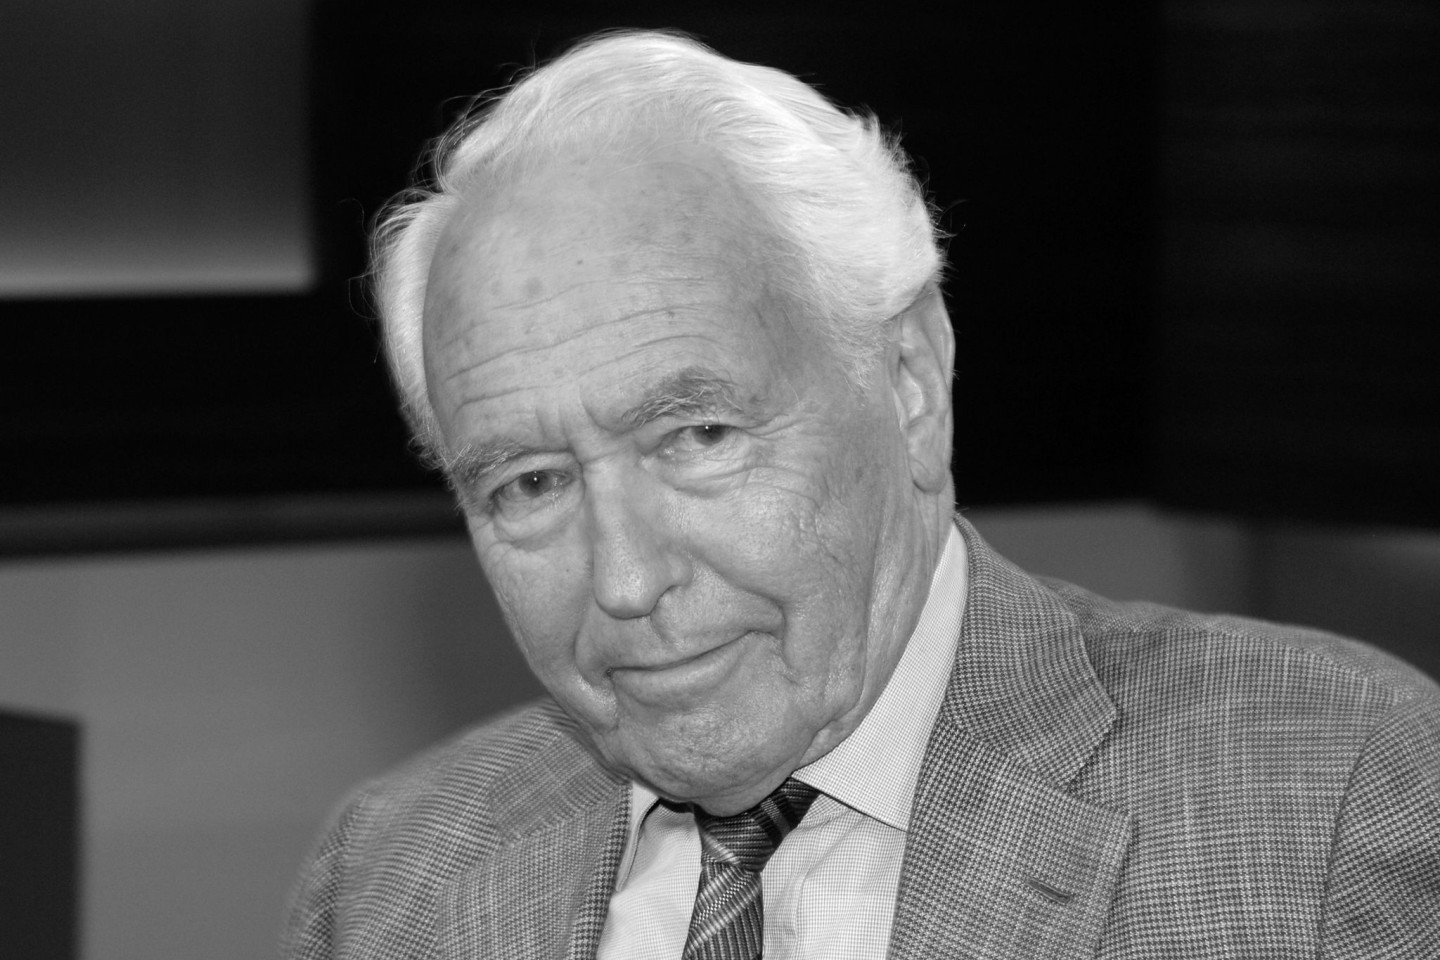 Der Journalist und Sprachkritiker Wolf Schneider wurde 97 Jahre alt.